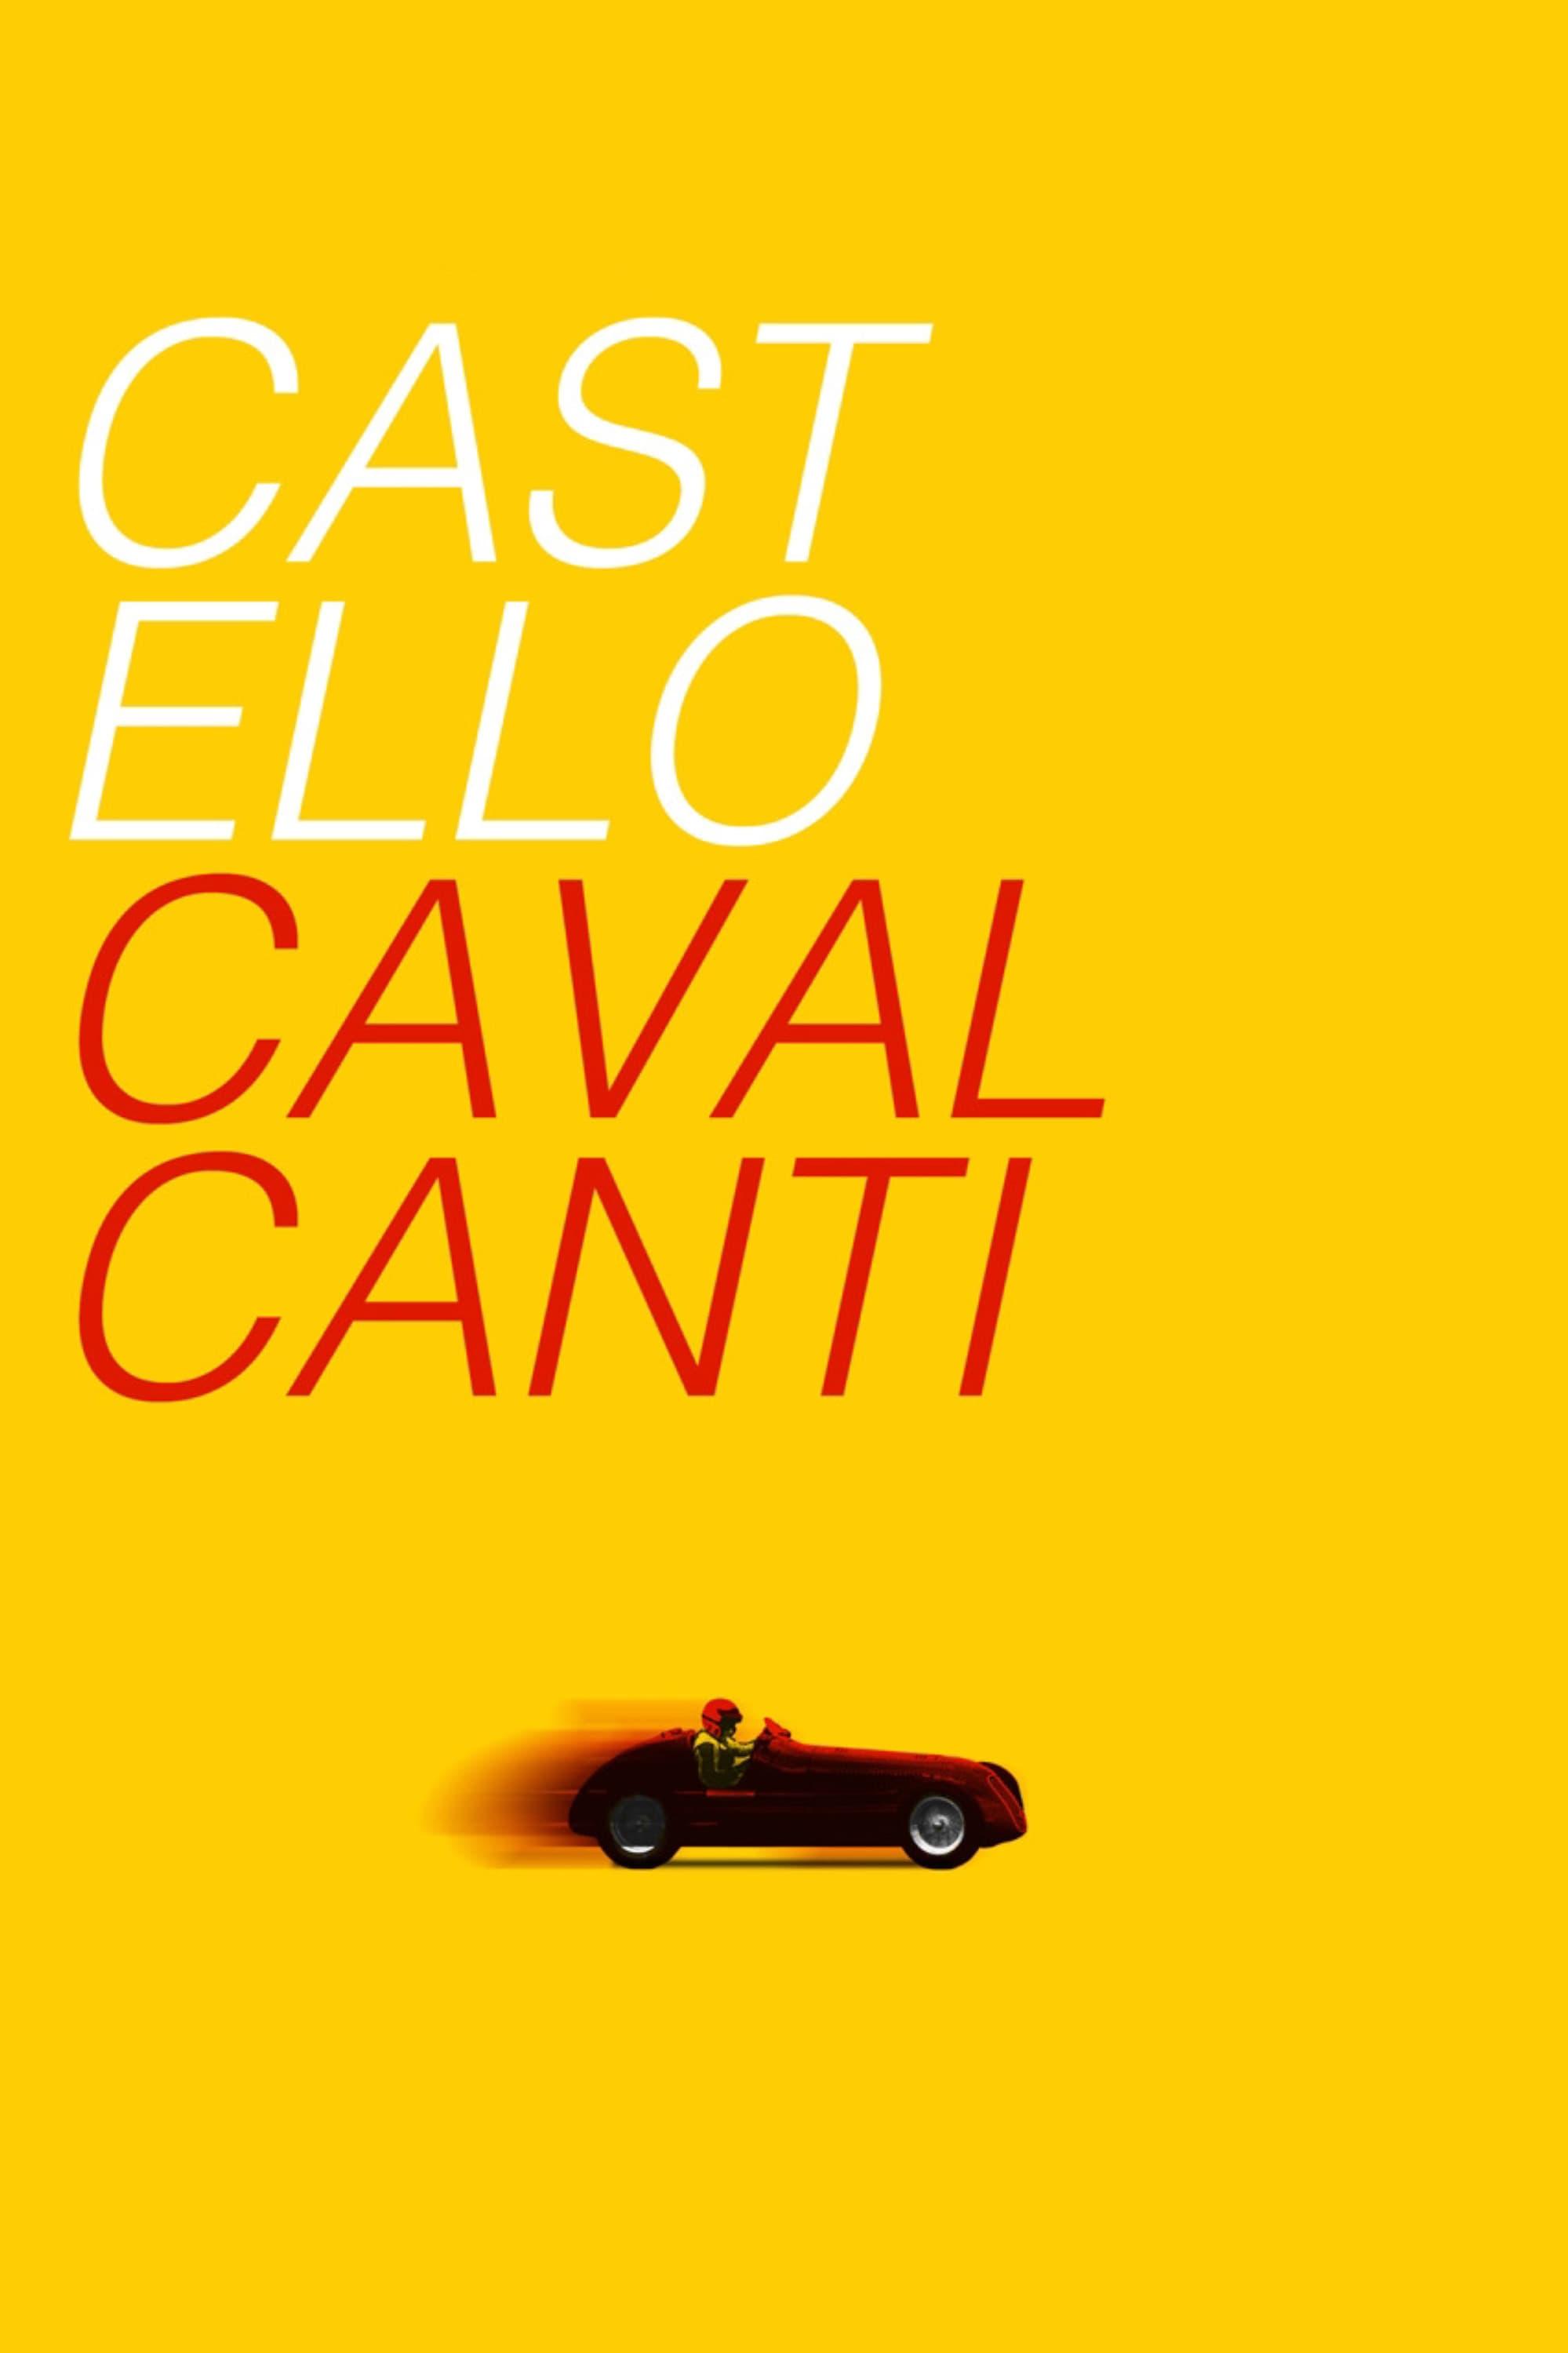 Castello Cavalcanti poster